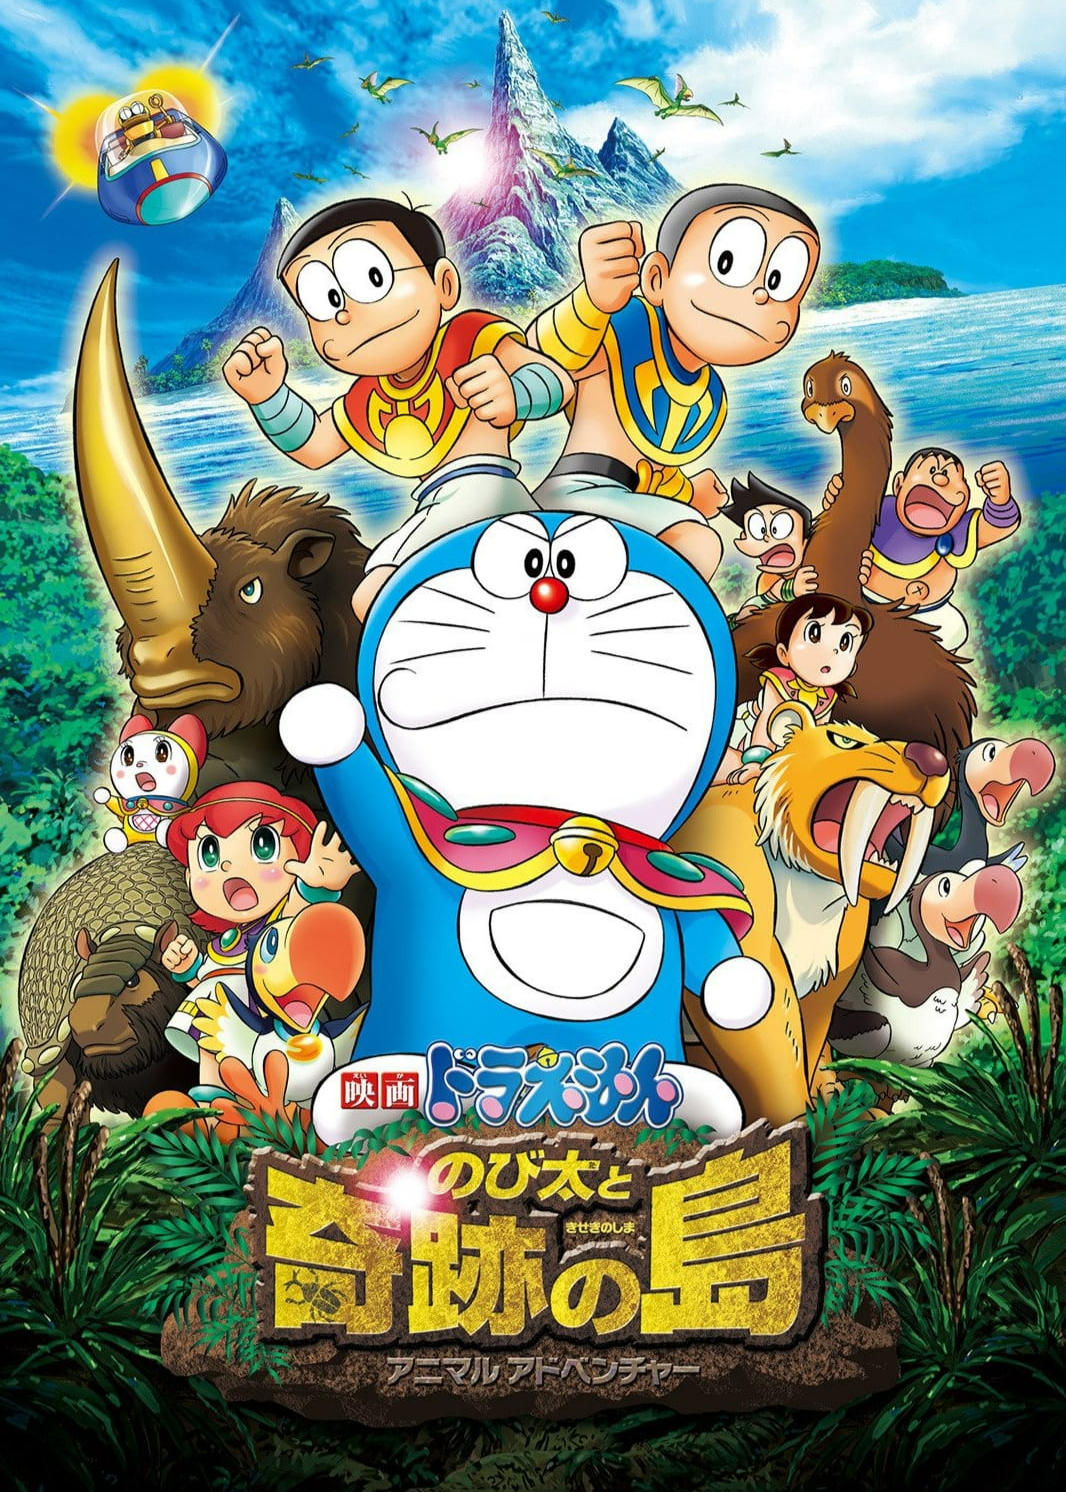 Xem Phim Doraemon: Nobita & Binh Đoàn Người Sắt - Đôi Cánh Thiên Thần (Doraemon: Nobita and the Island of Miracles - Animal Adventure)